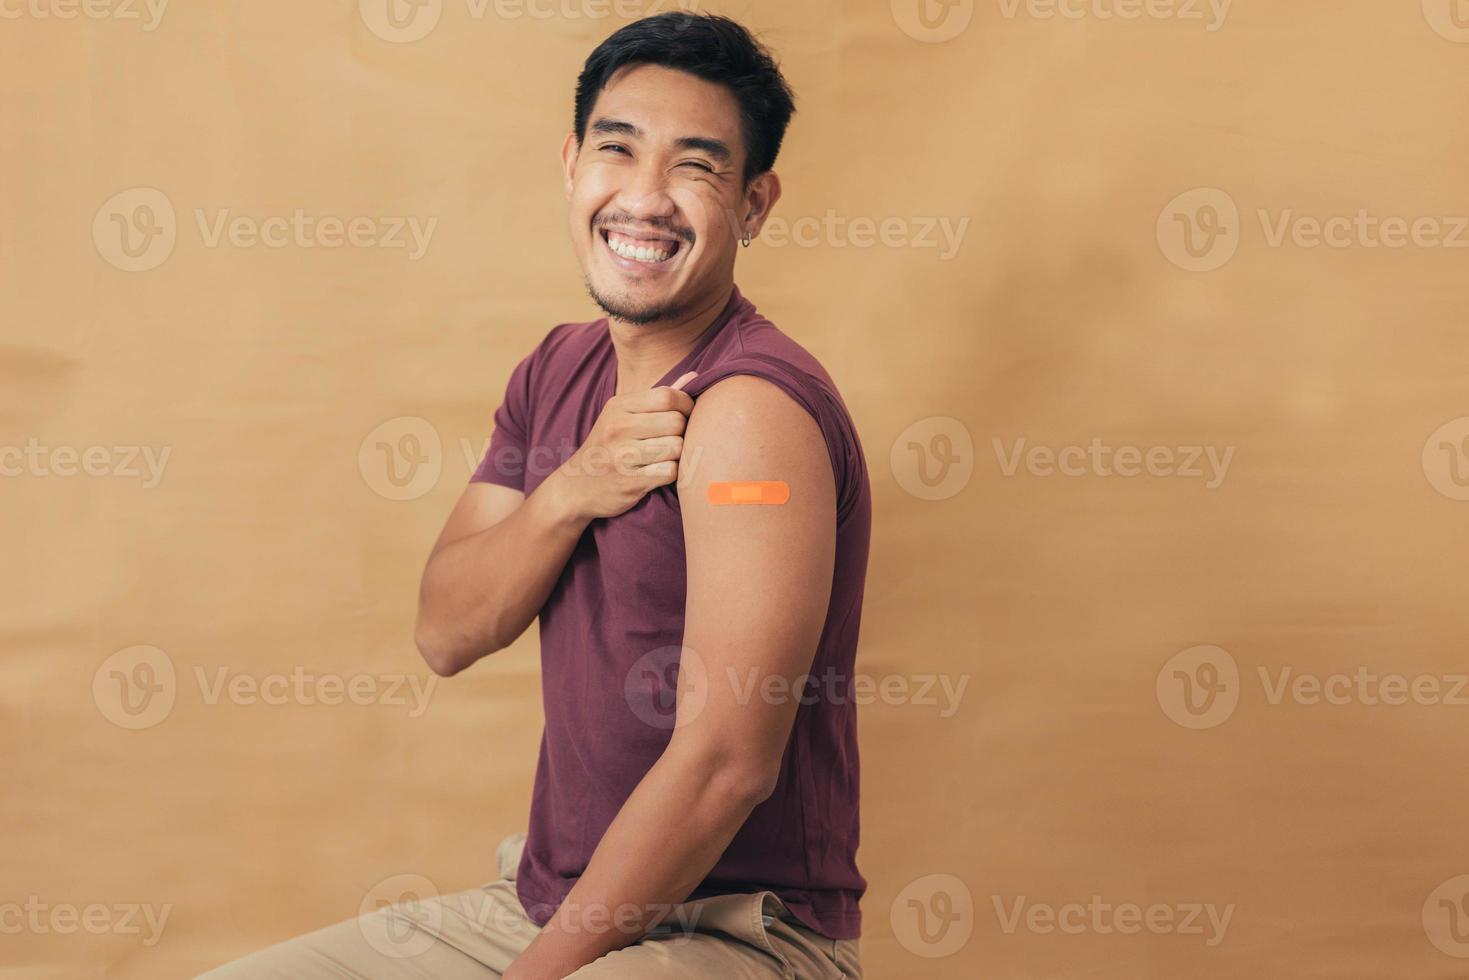 aziatische man die schouders toont na het krijgen van een vaccin. gelukkige man die arm toont met pleisters op na vaccininjectie. foto